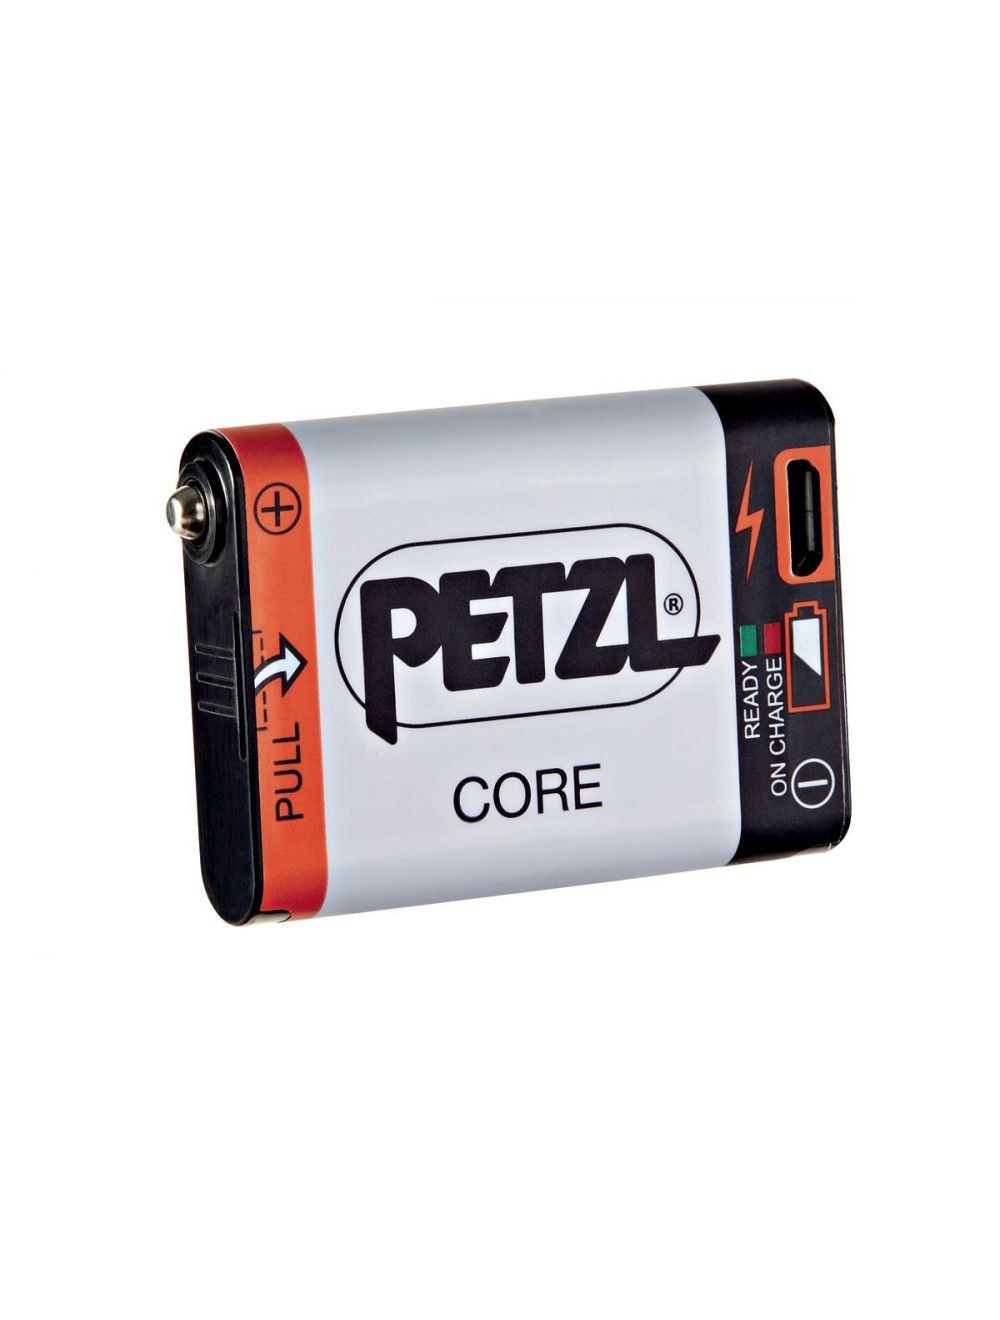 Lang Herhaald stormloop Petzl Core Oplaadbare Batterij kopen? Zaklampen.nl